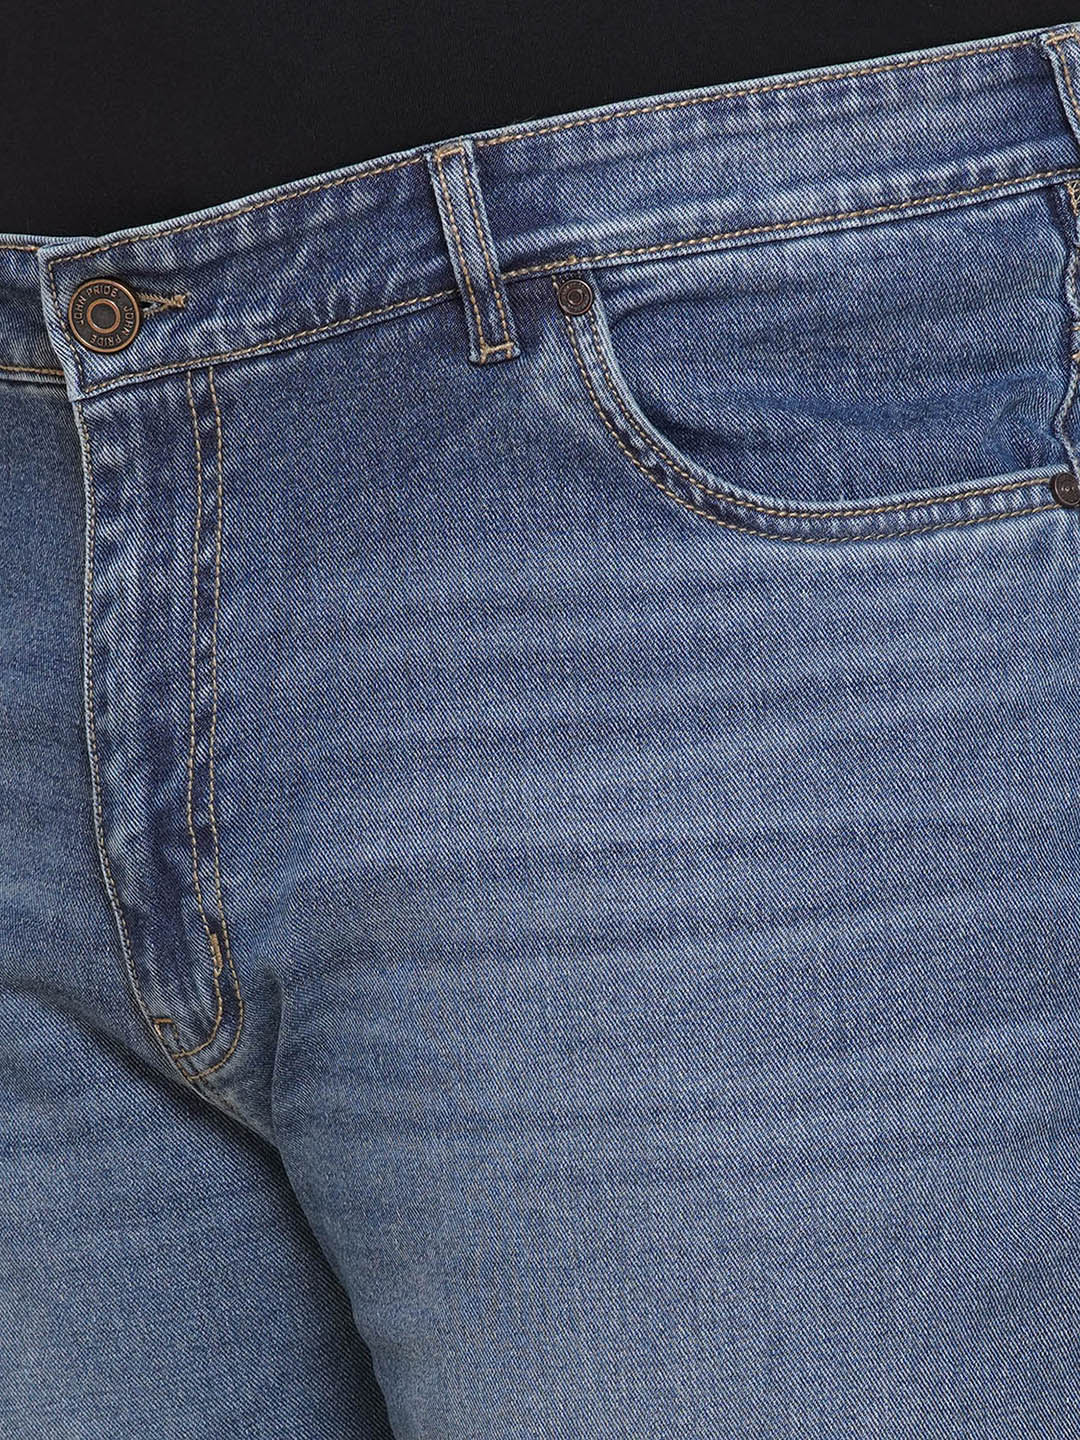 bottomwear/jeans/JPJ270125/jpj270125-2.jpg